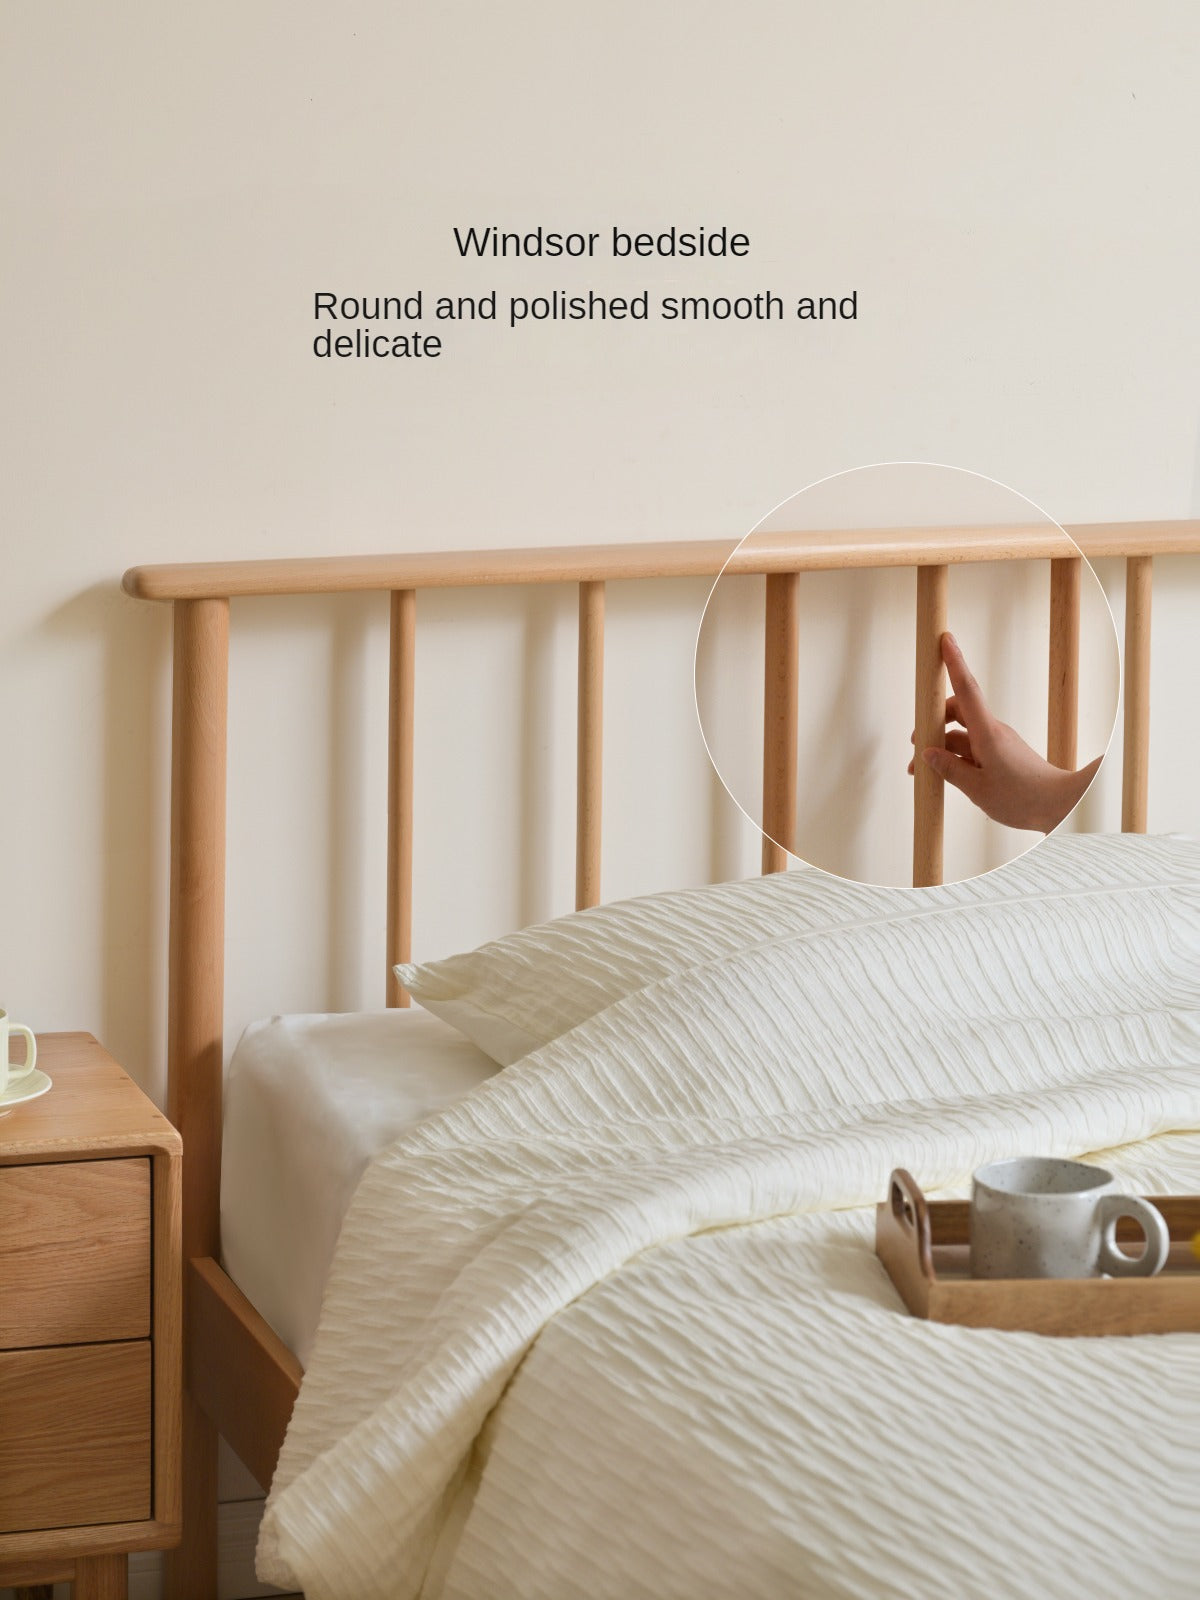 European beech solid wood Windsor bed).